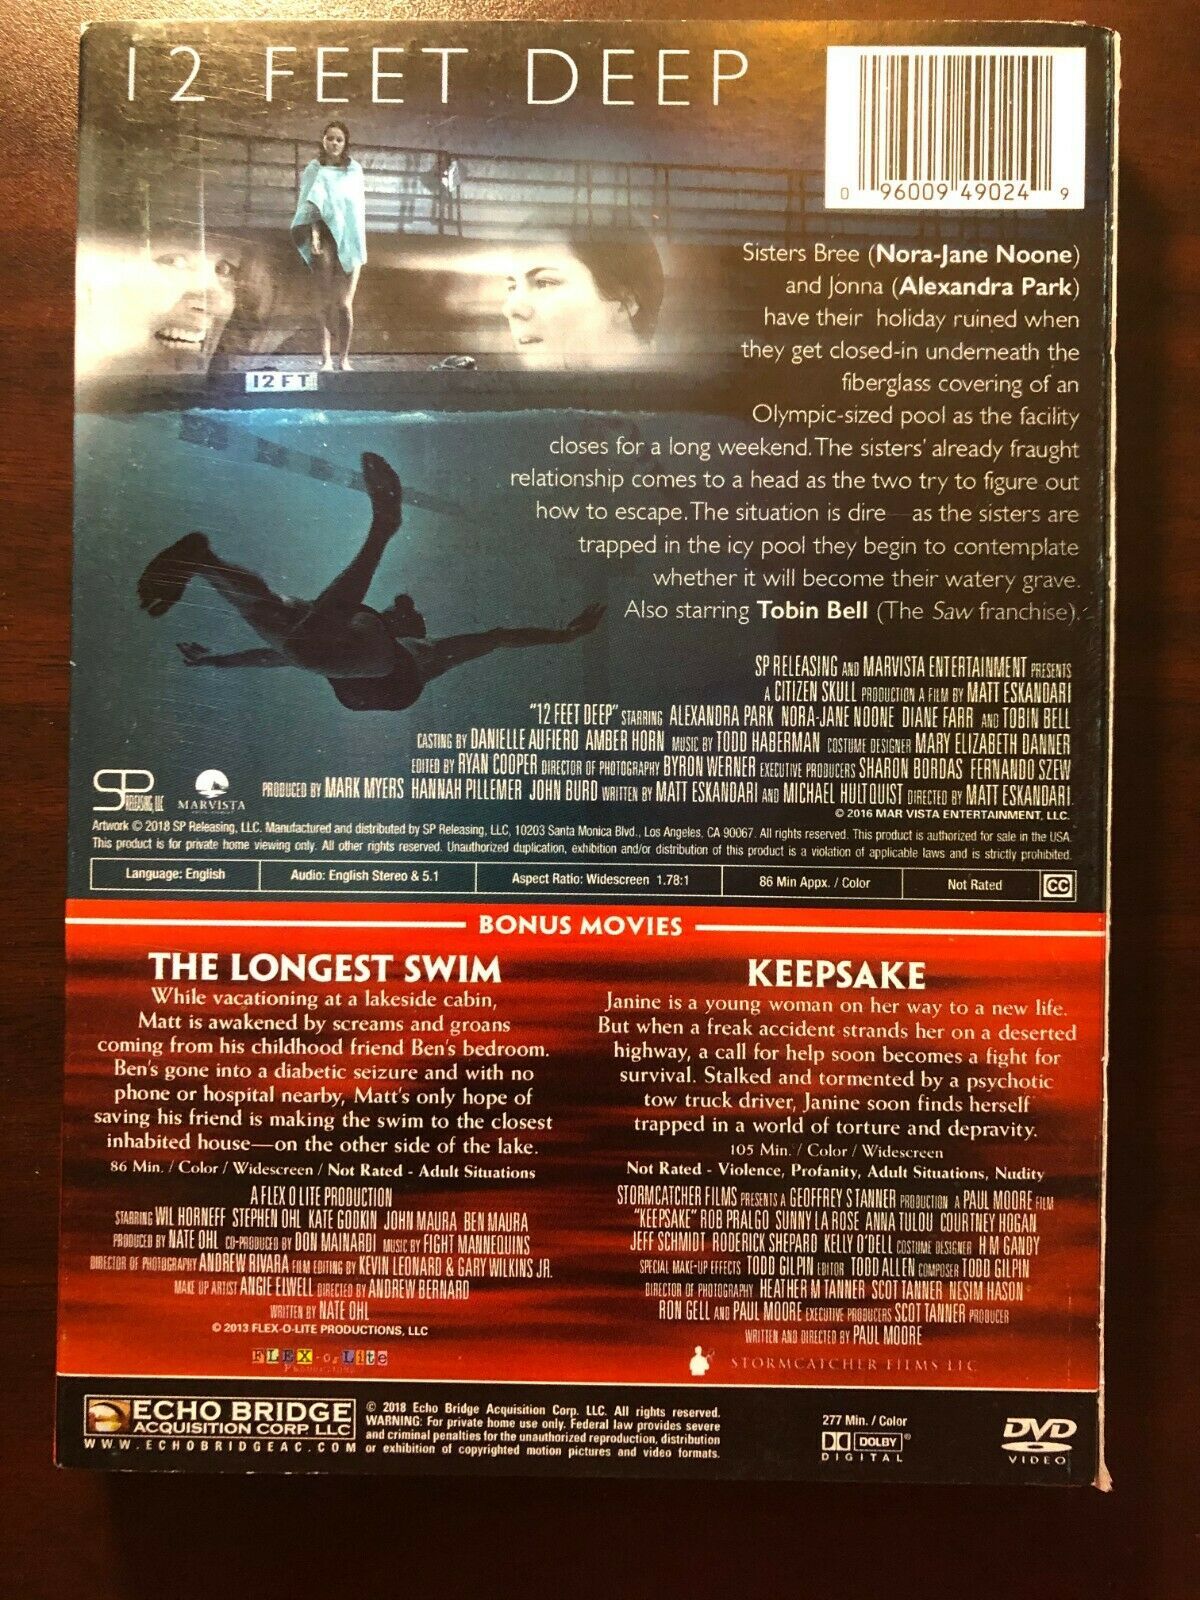 12 Feet Deep: Includes 2 Bonus Movies DVD (Keepsake - The Longest Swim)